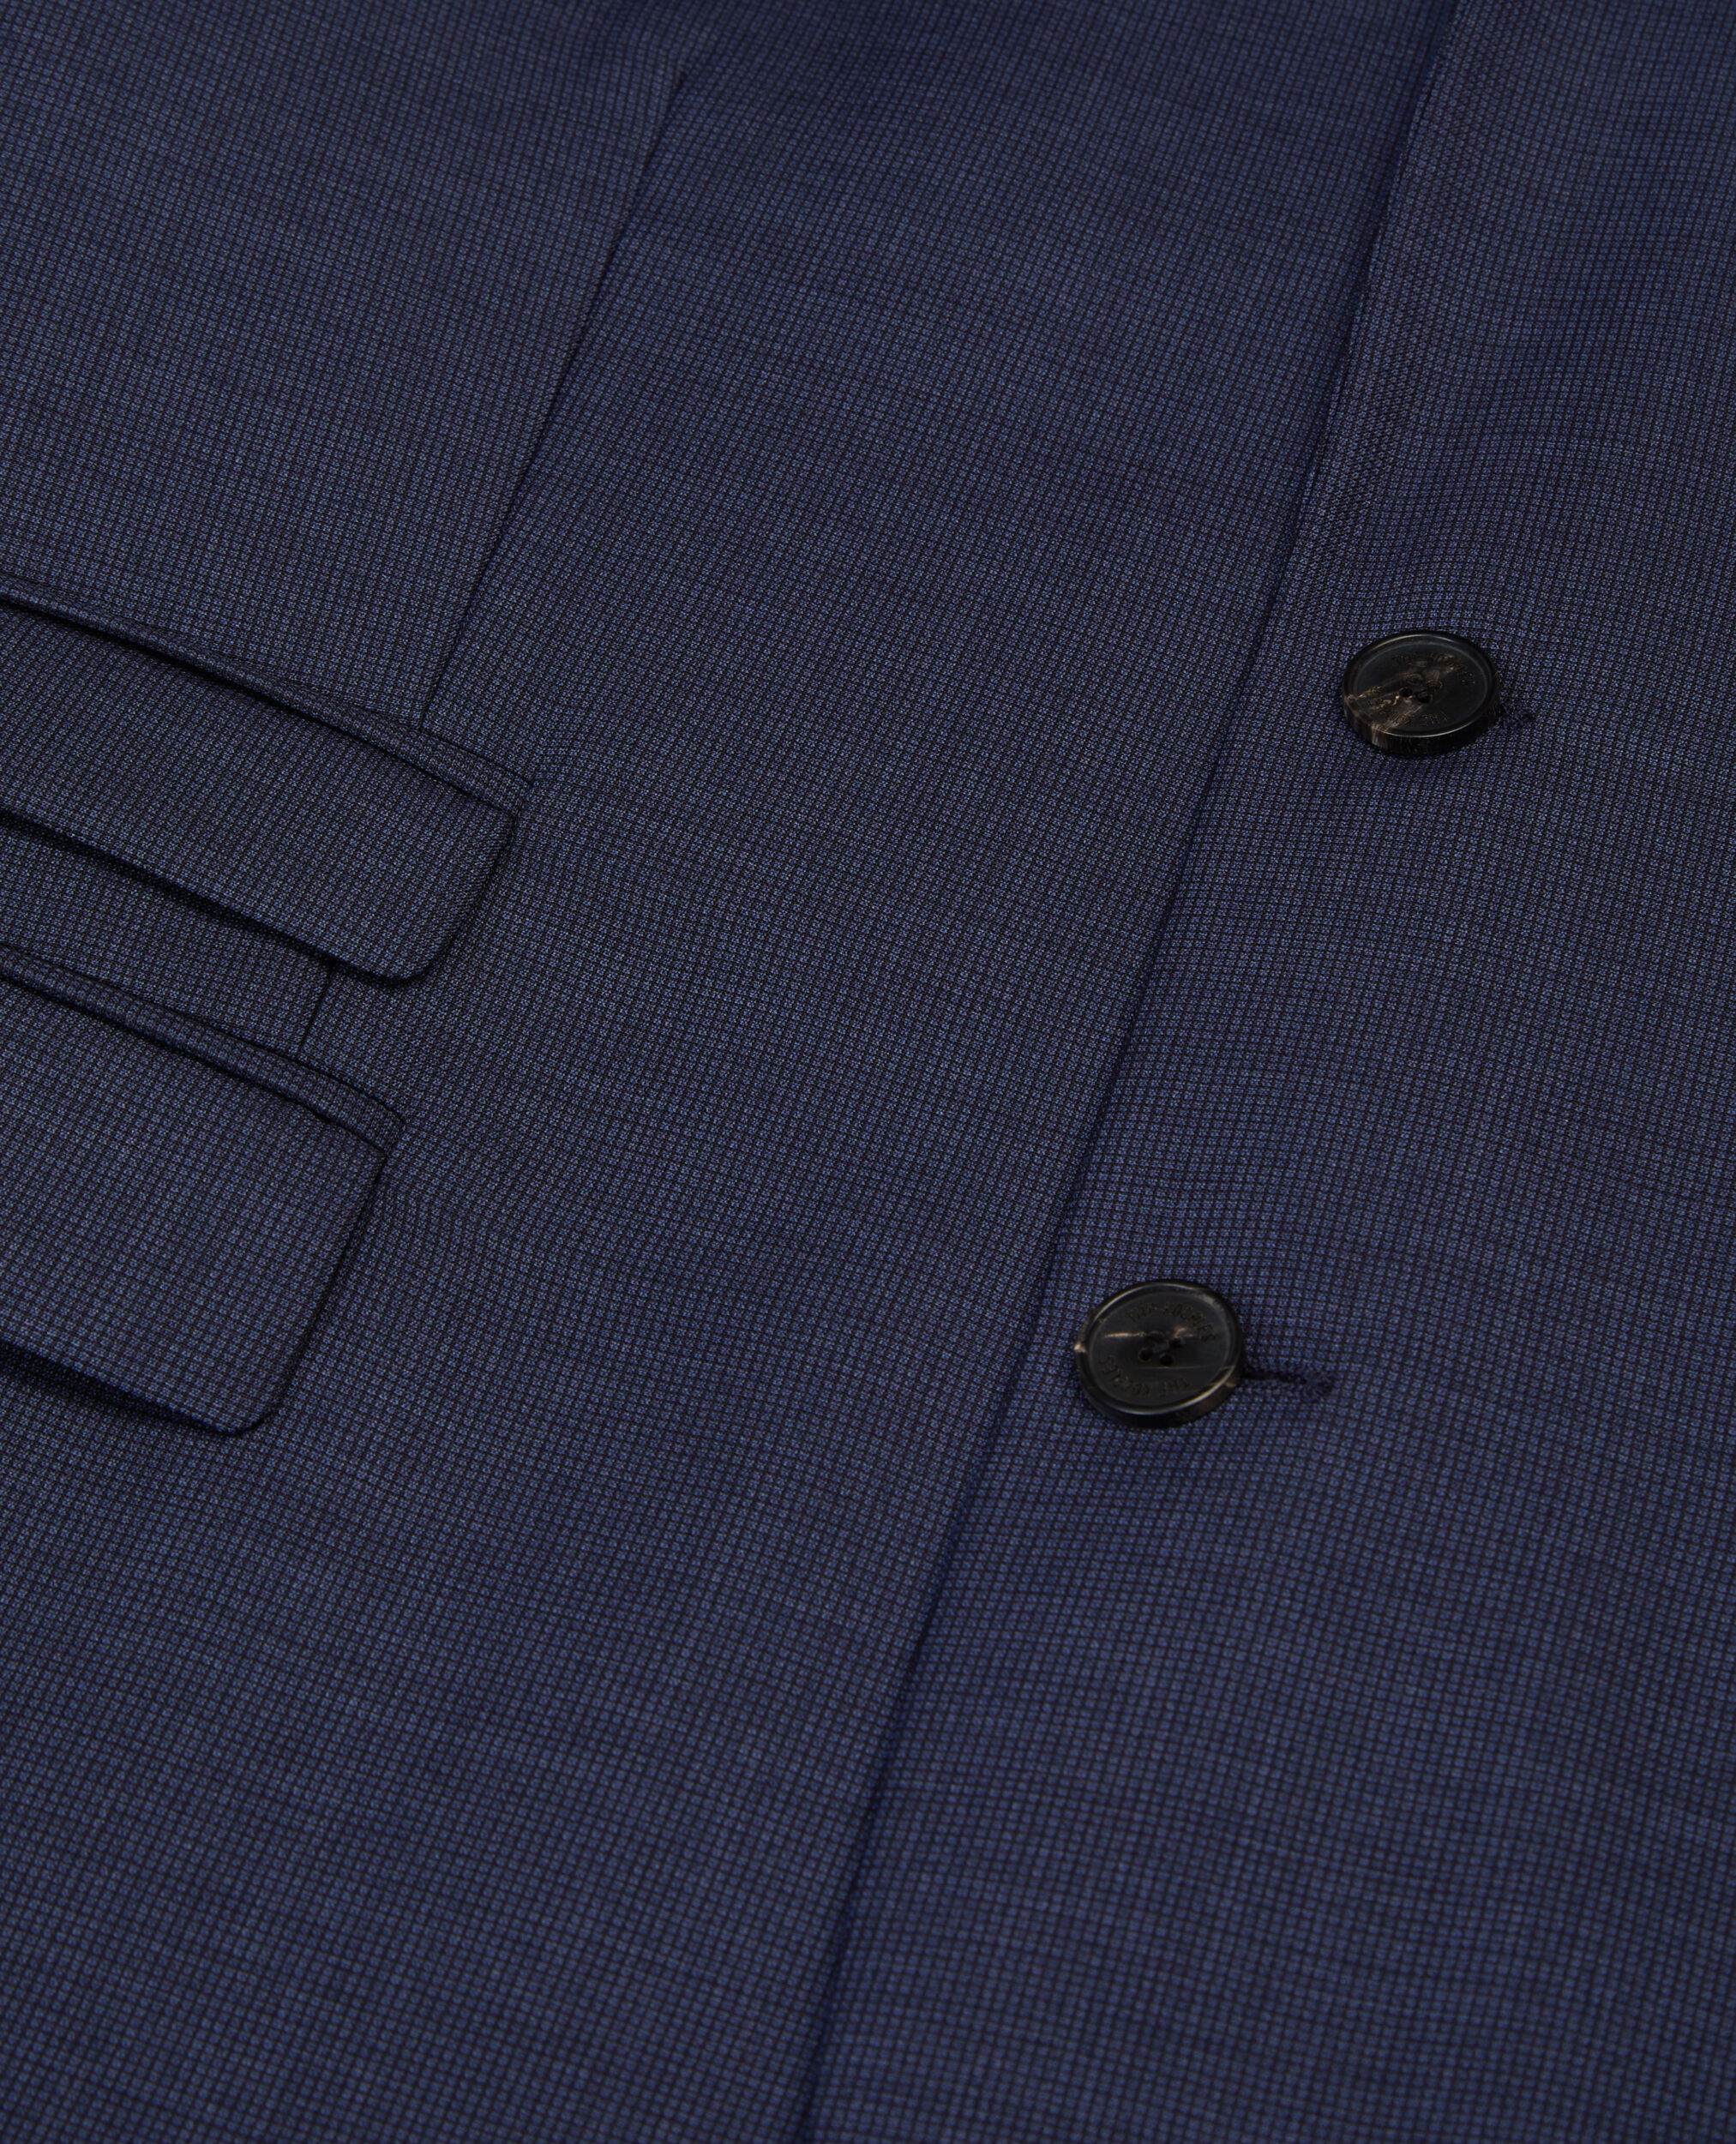 Veste de costume bleu marine micro carreaux en laine, NAVY, hi-res image number null